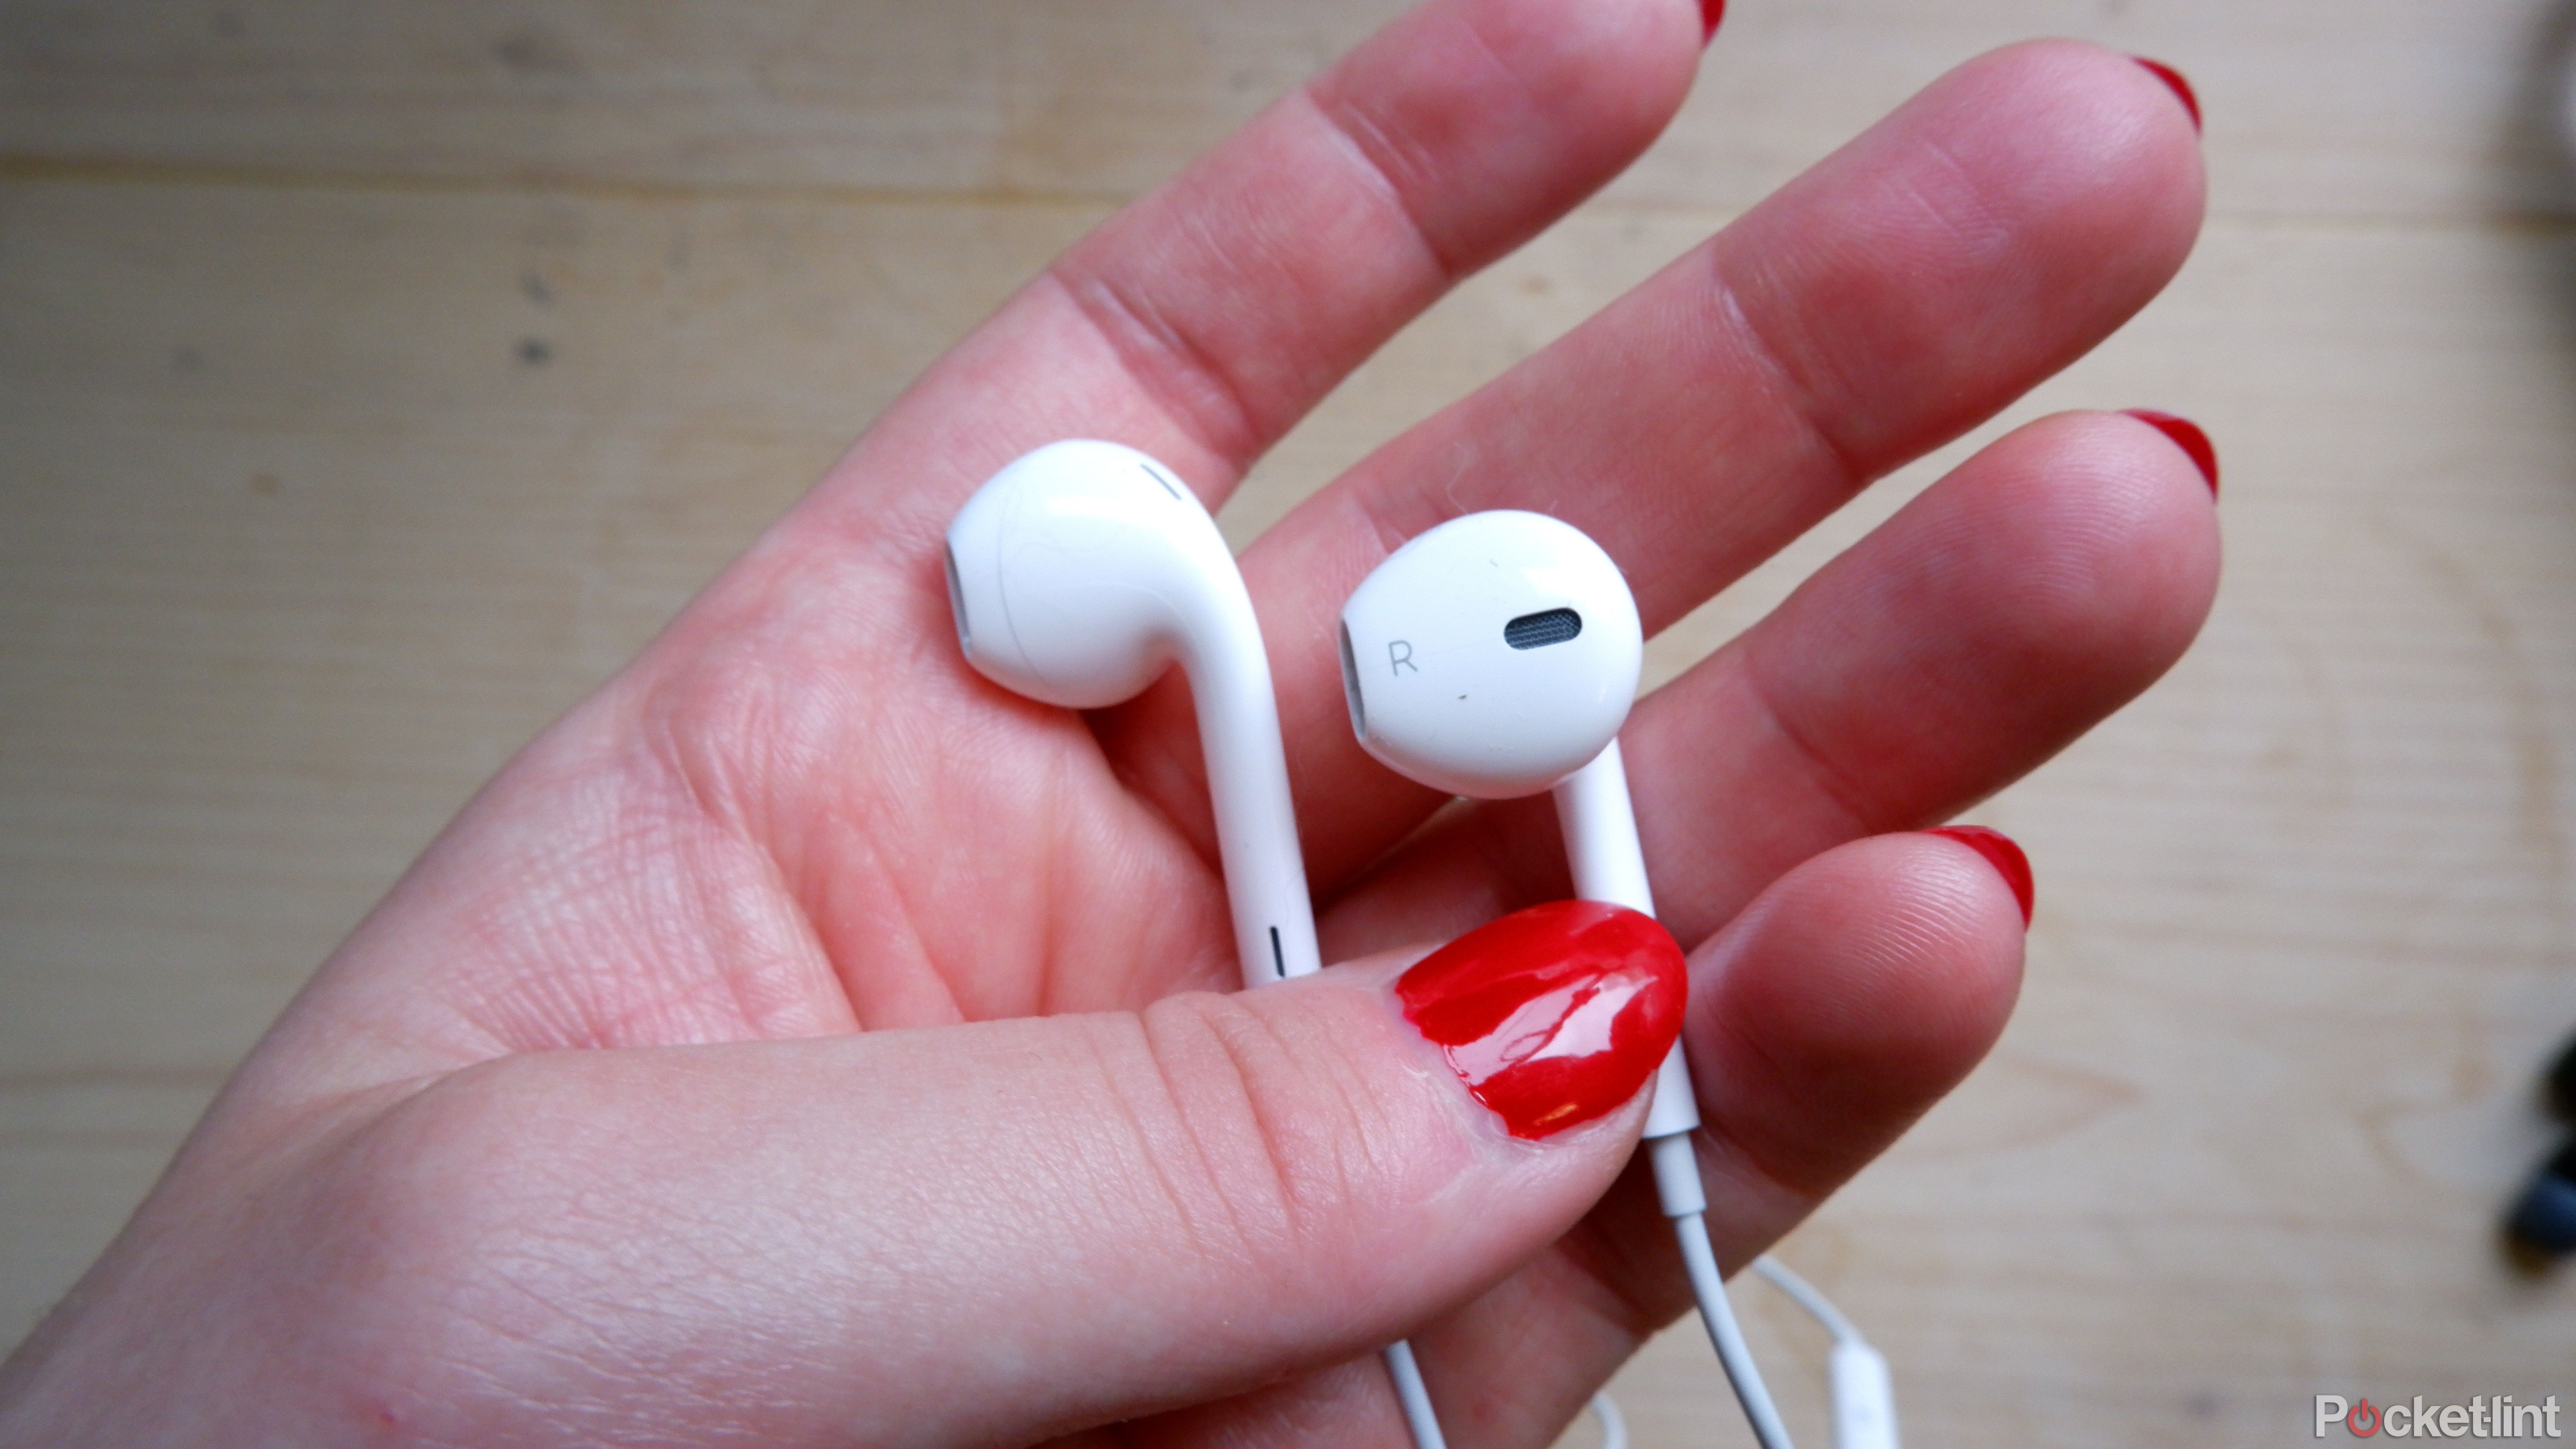 Apple EarPods in a hand